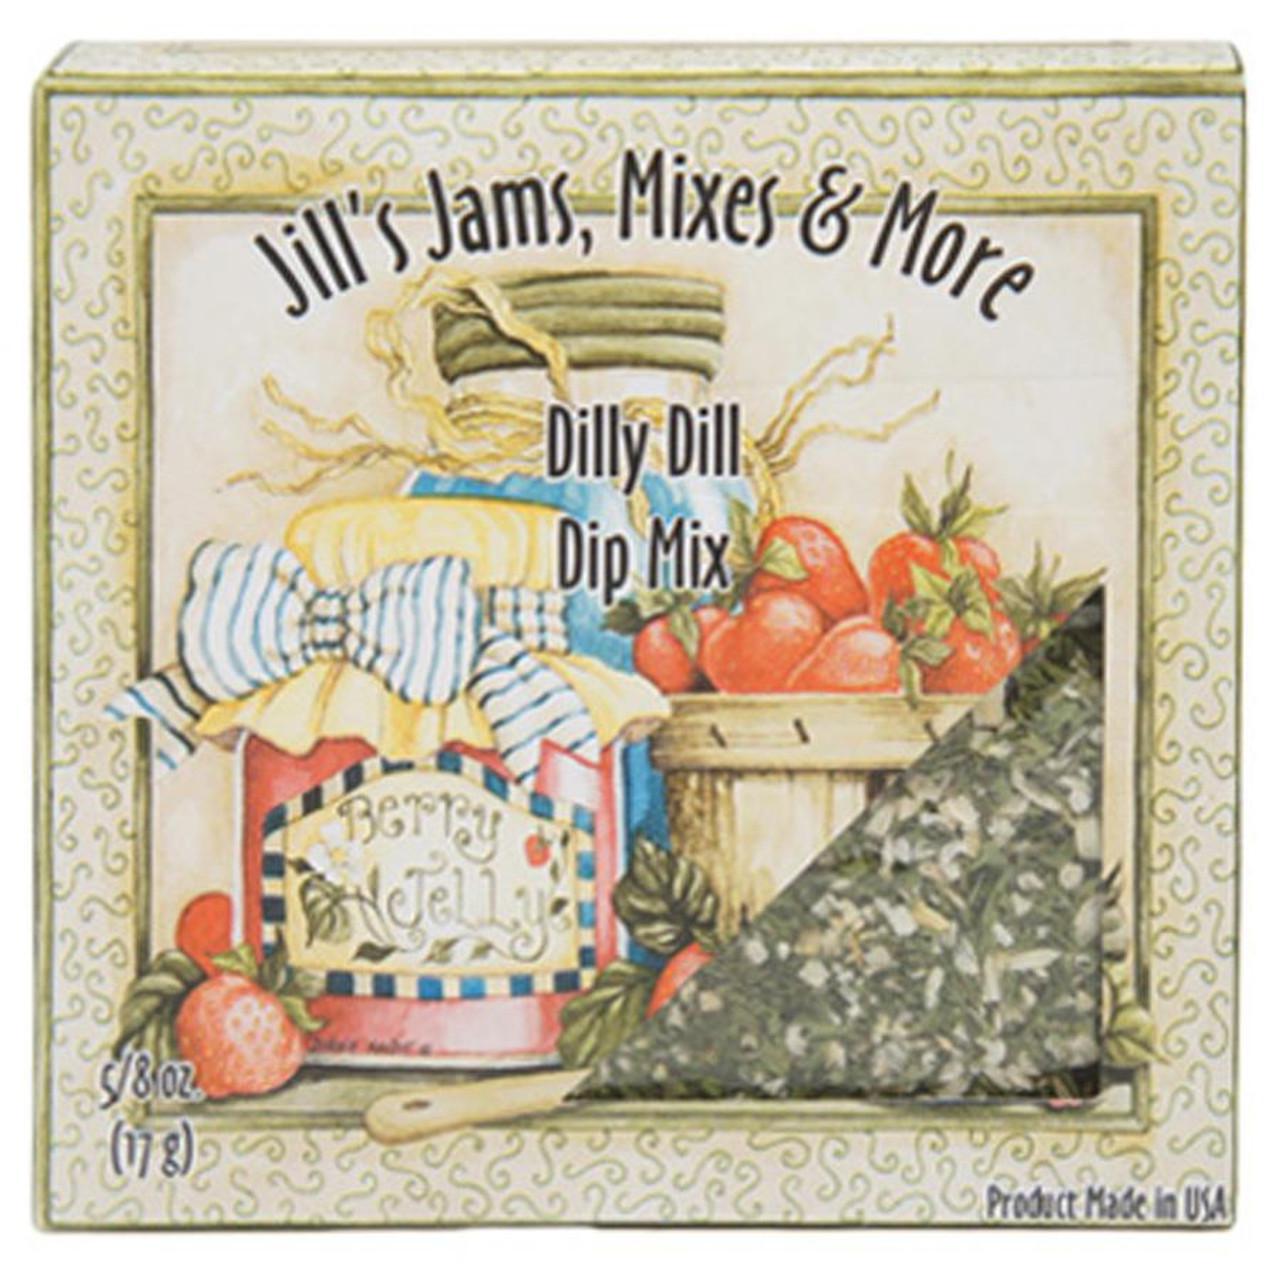 Jill's Jams, Mixes & More Dilly Dill Mix